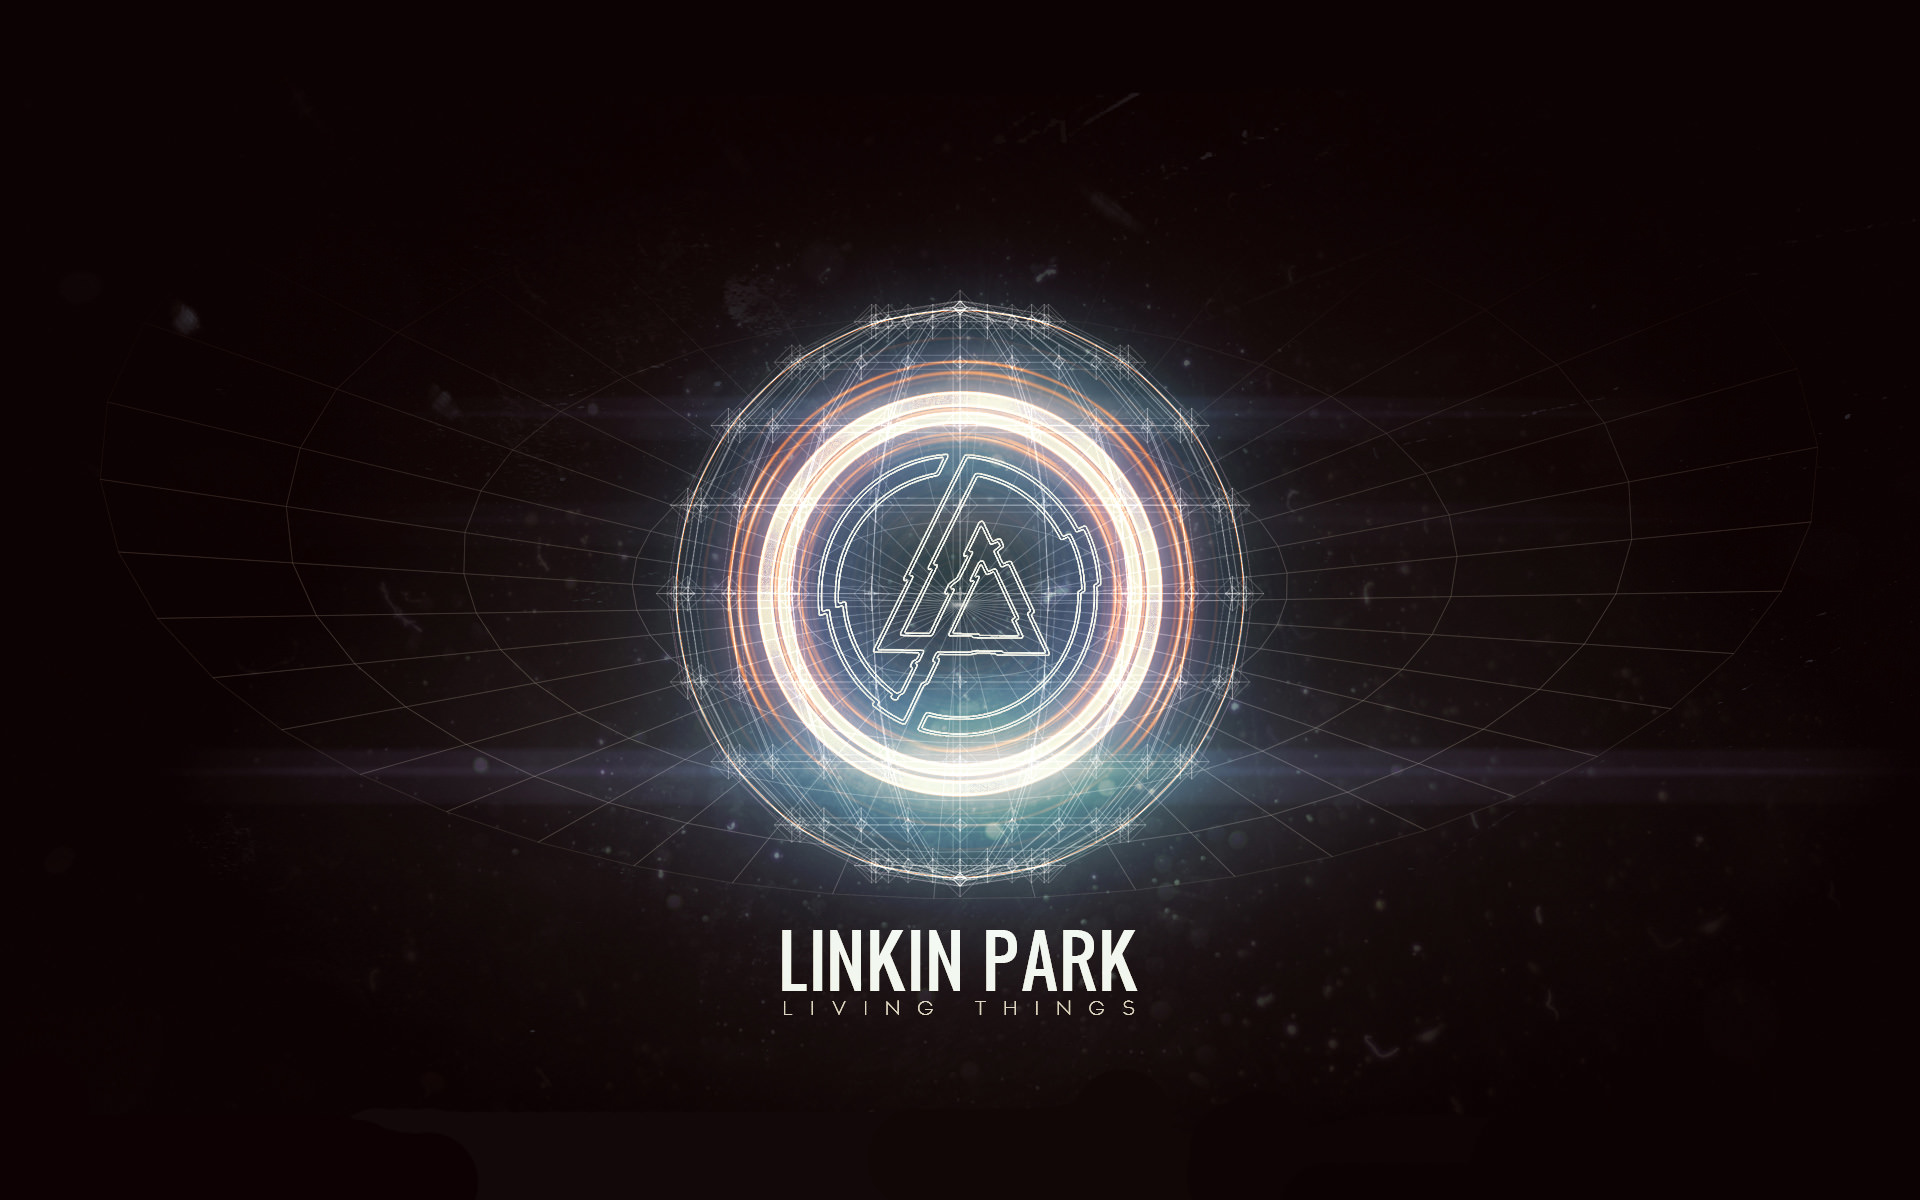 21世紀史上最強のロックバンド Linkin Park のカッコよすぎる曲ベスト10 まぬけブログ